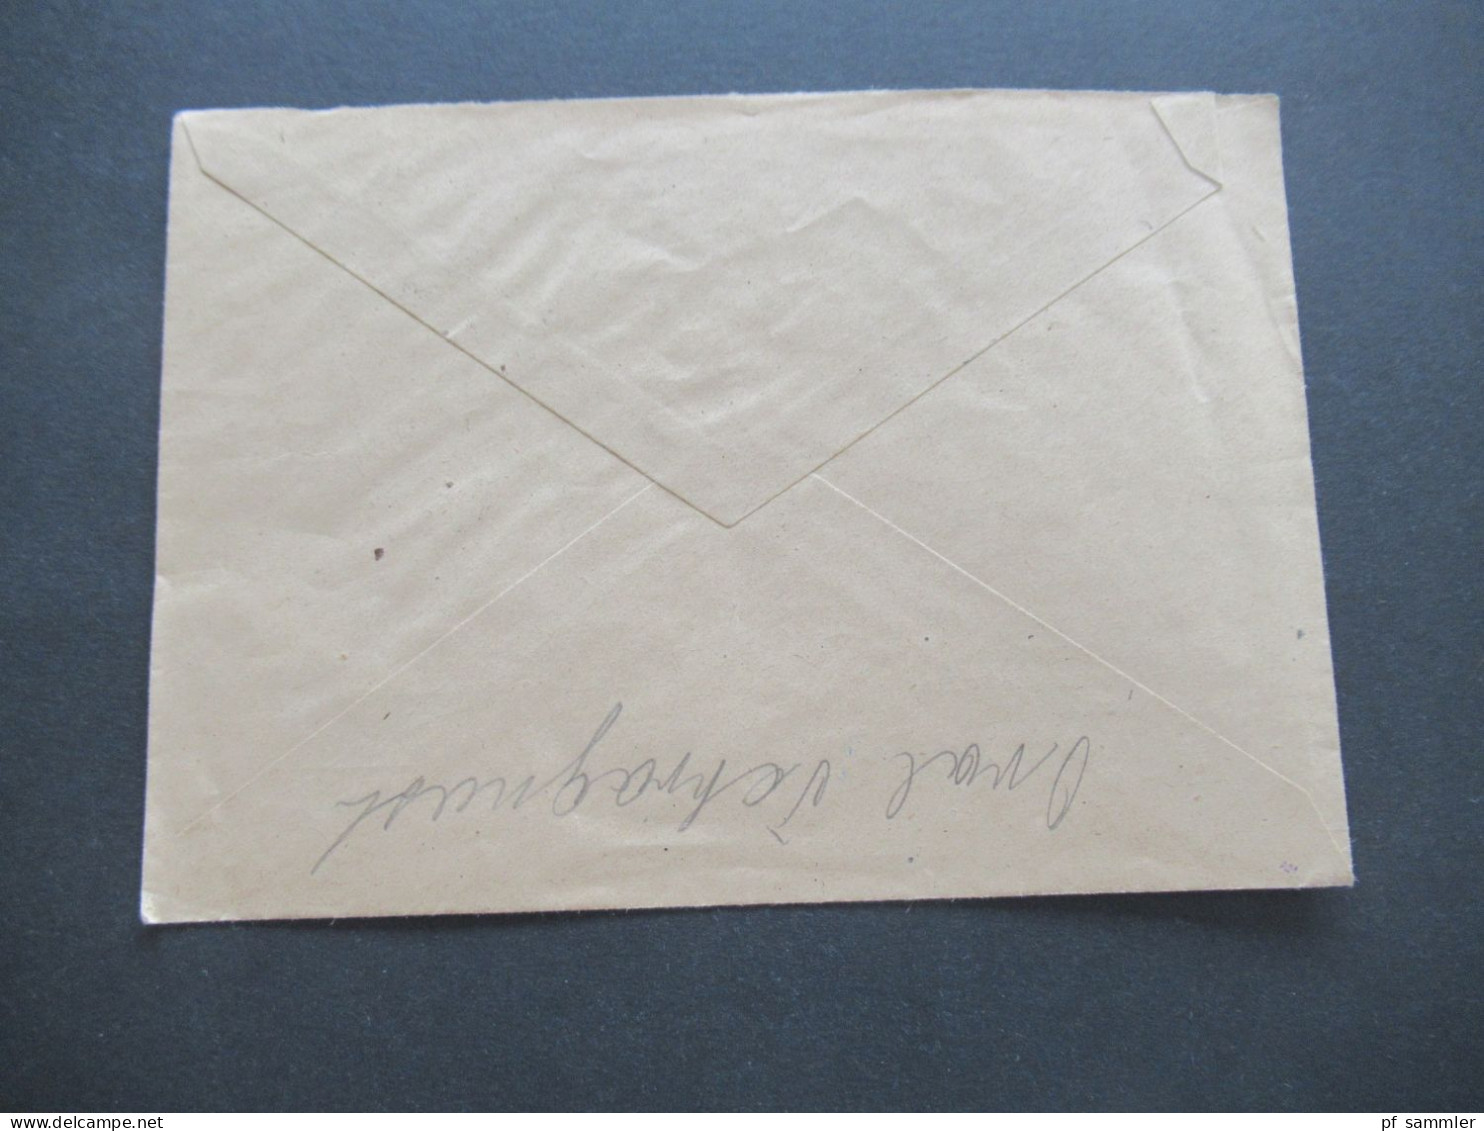 1946 Notmaßnahme Stempel Mit Freivermerk Rpf Und Tagesstempel Schwarzwald über Ohrdruf Umschlag Paul Gläser Gewürzpacker - Lettres & Documents